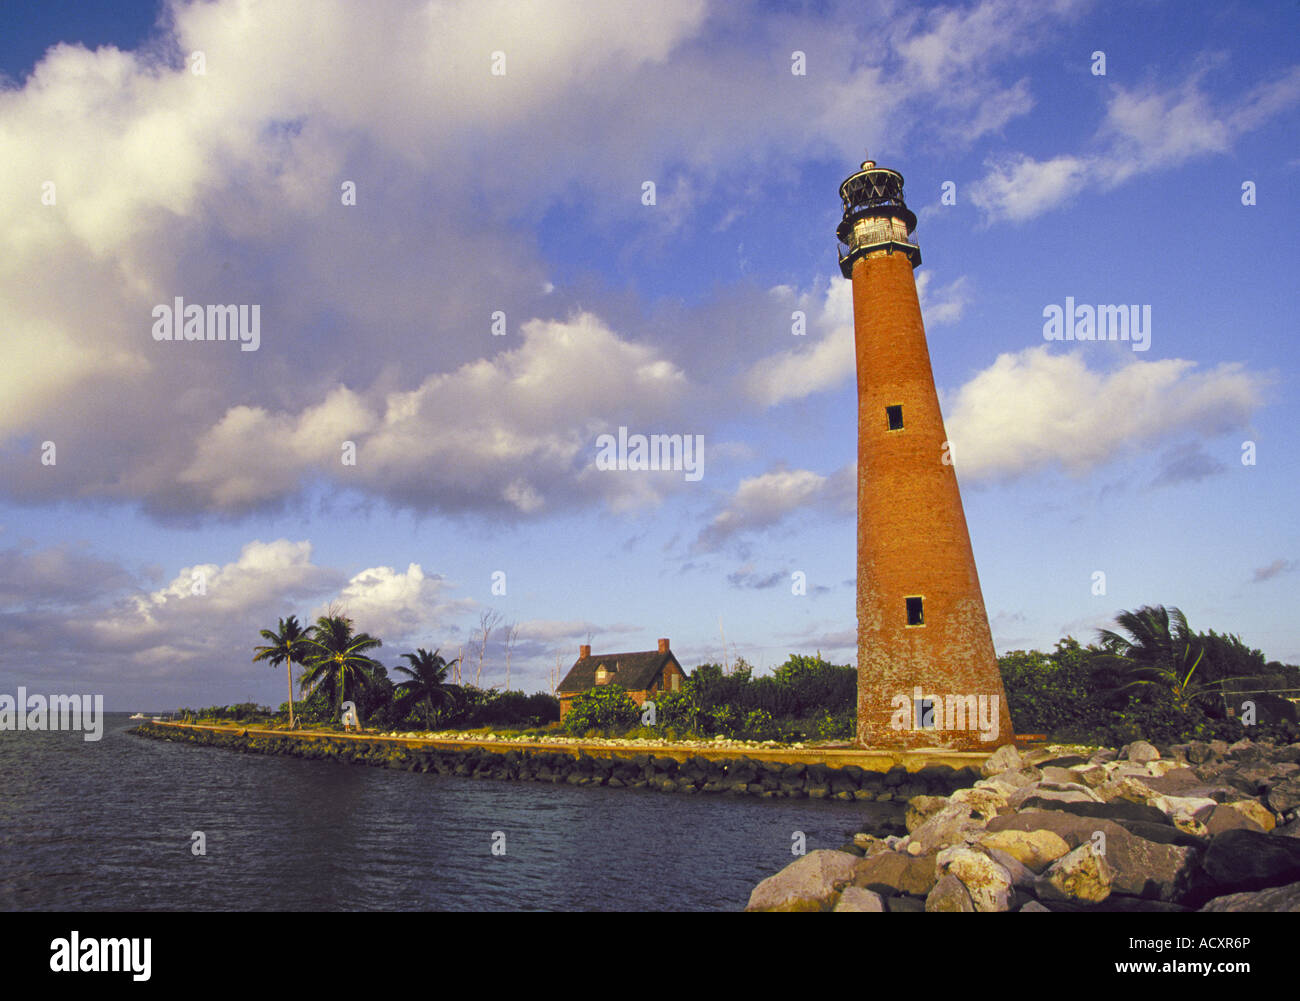 Historique Le phare de Cape Florida construite en 1825 est plus ancien bâtiment de la Floride s'il se tient sur Key Biscayne près de la ville de Miami en Floride. Banque D'Images